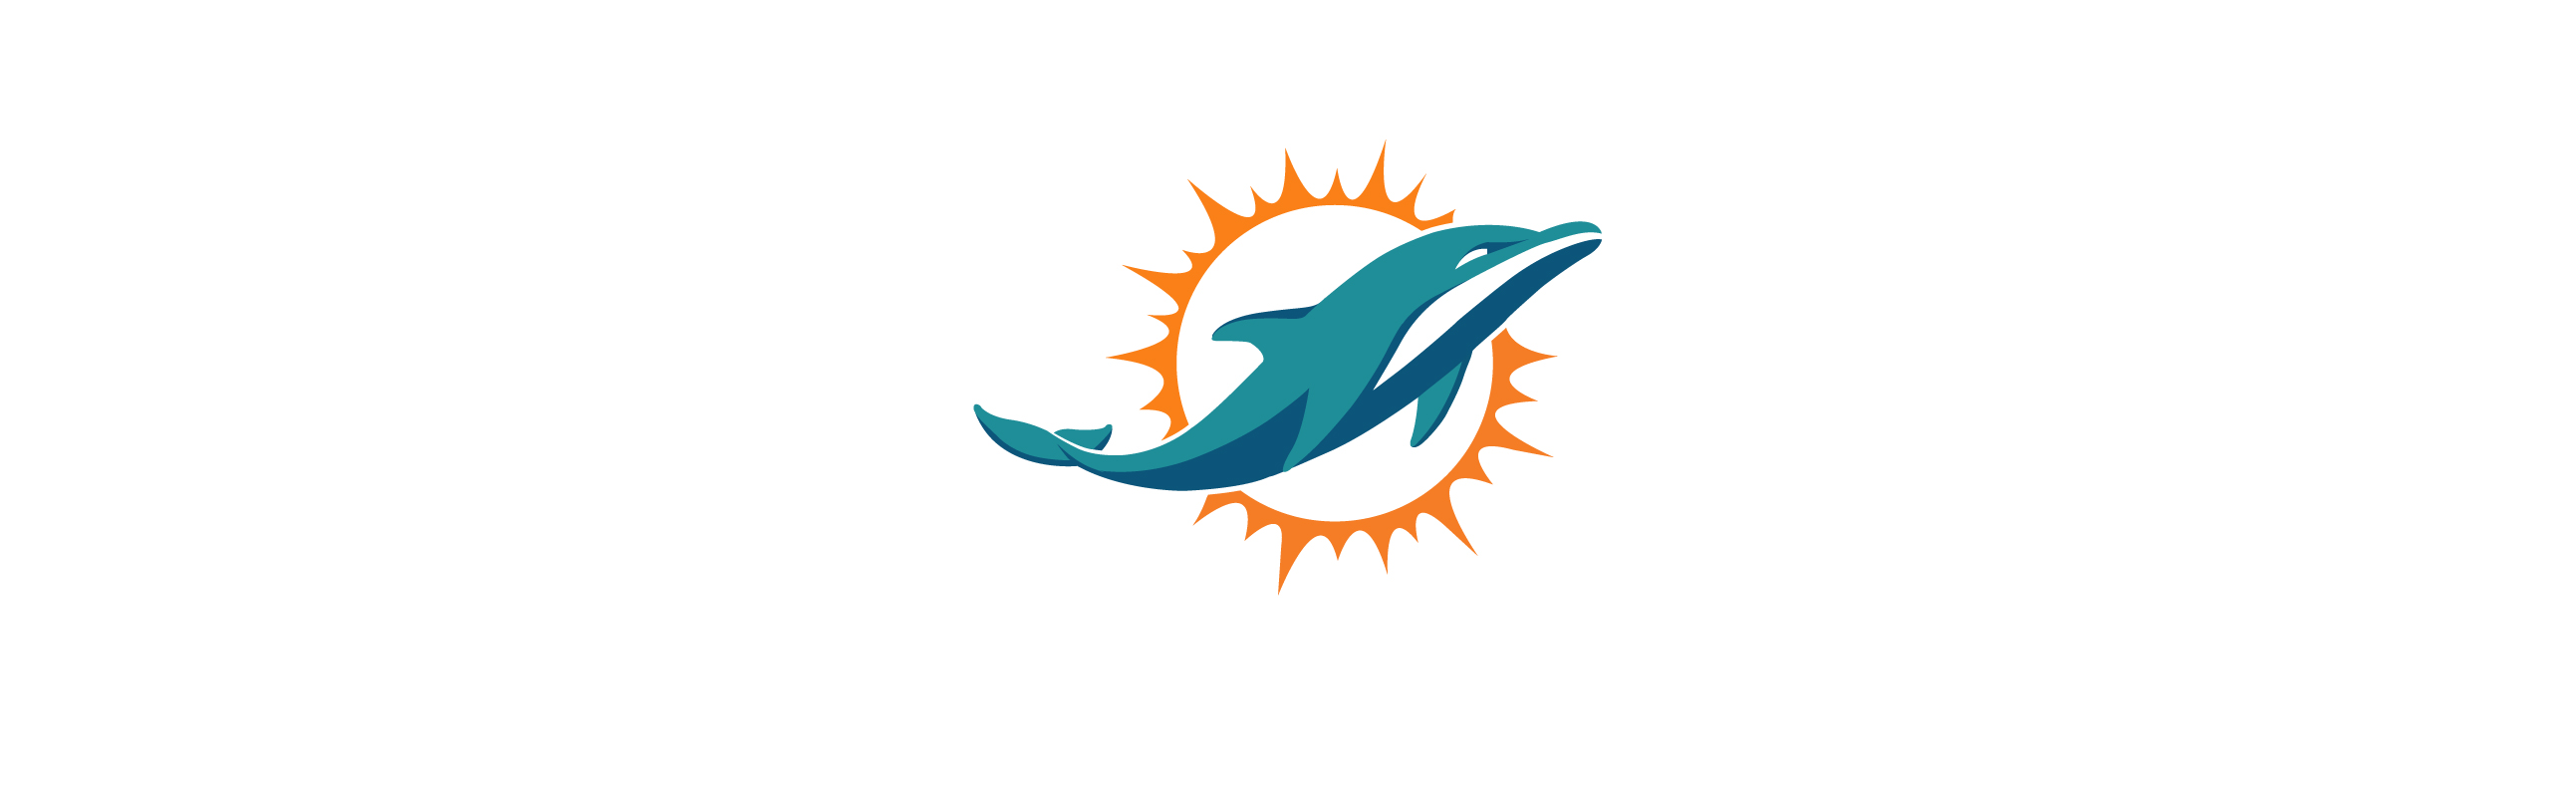 Miami dolphins. 